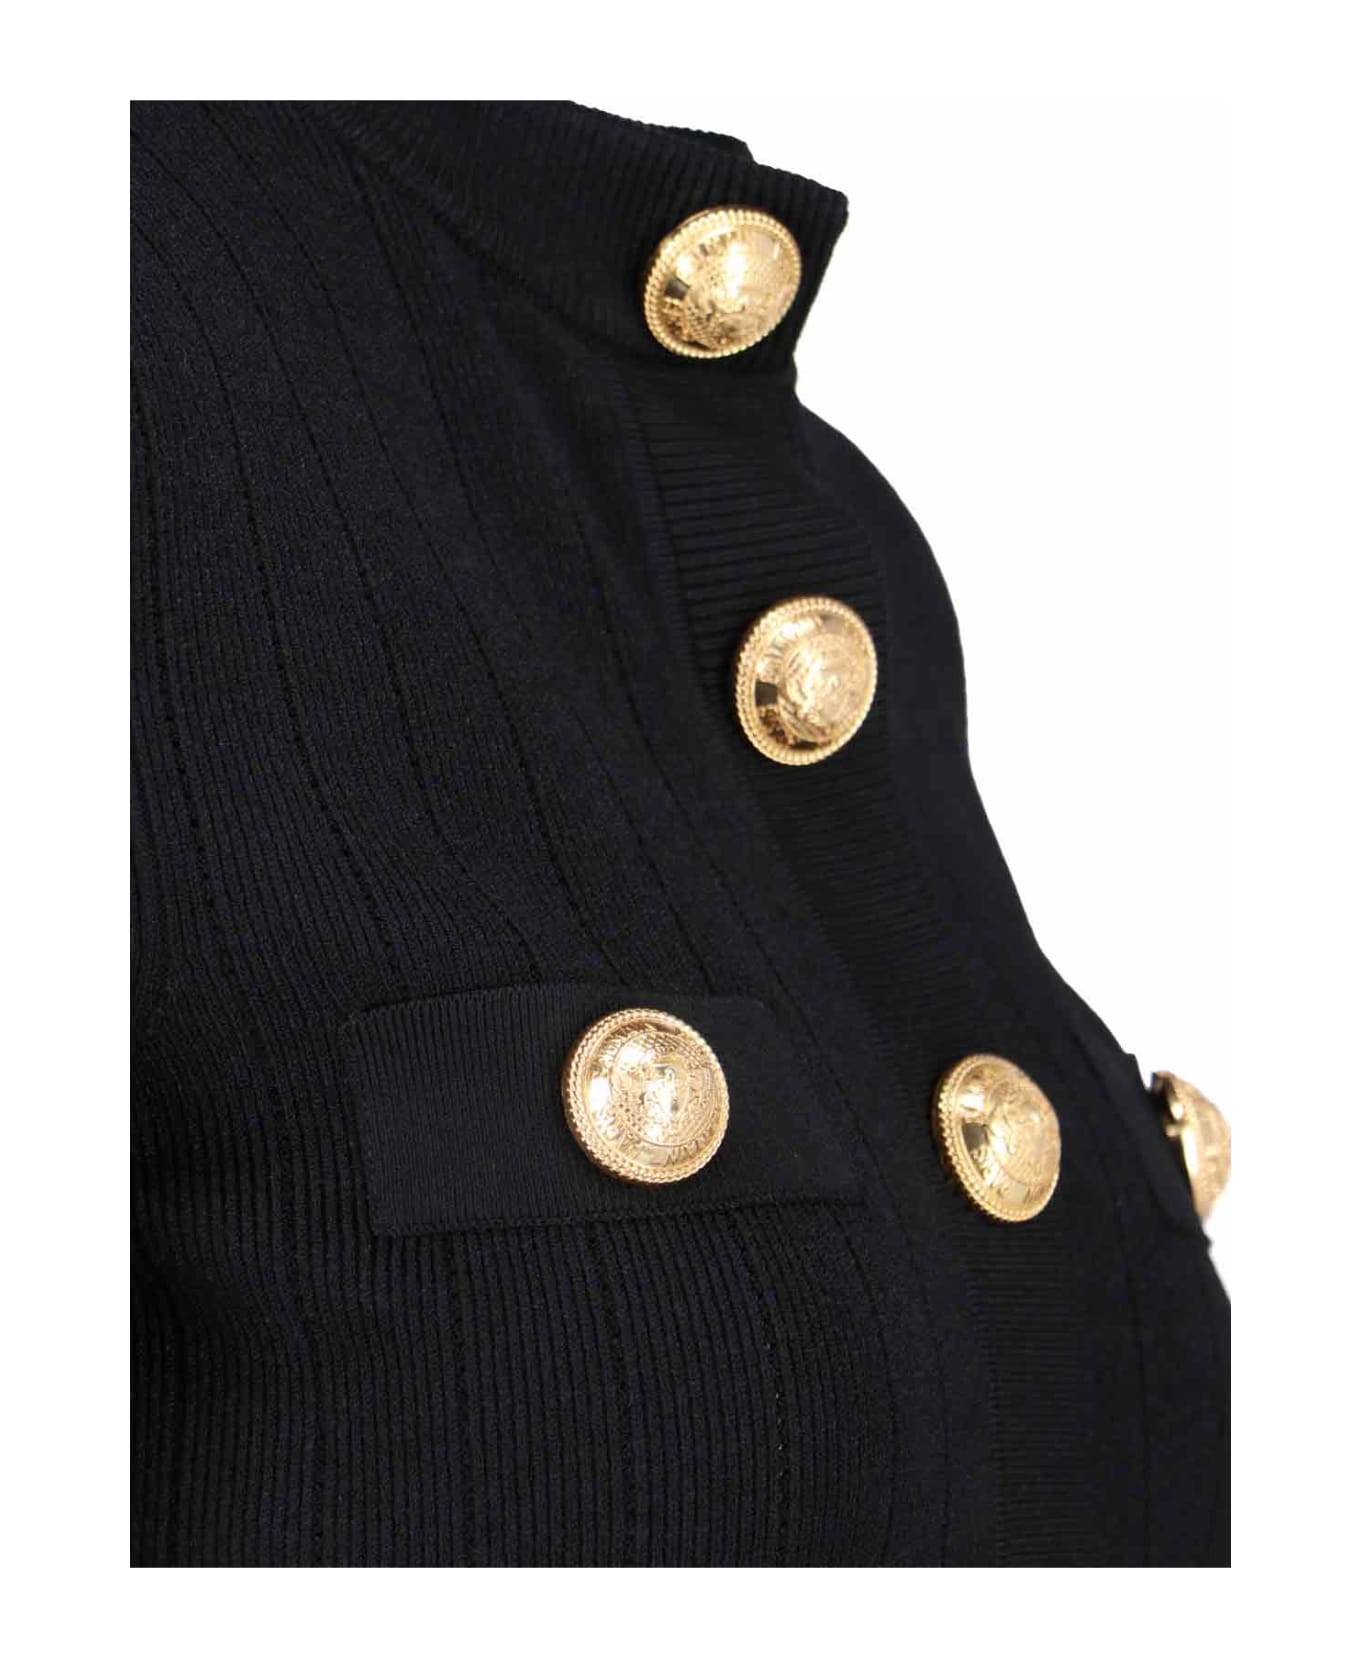 Balmain Gold Buttons Cardigan - Black  